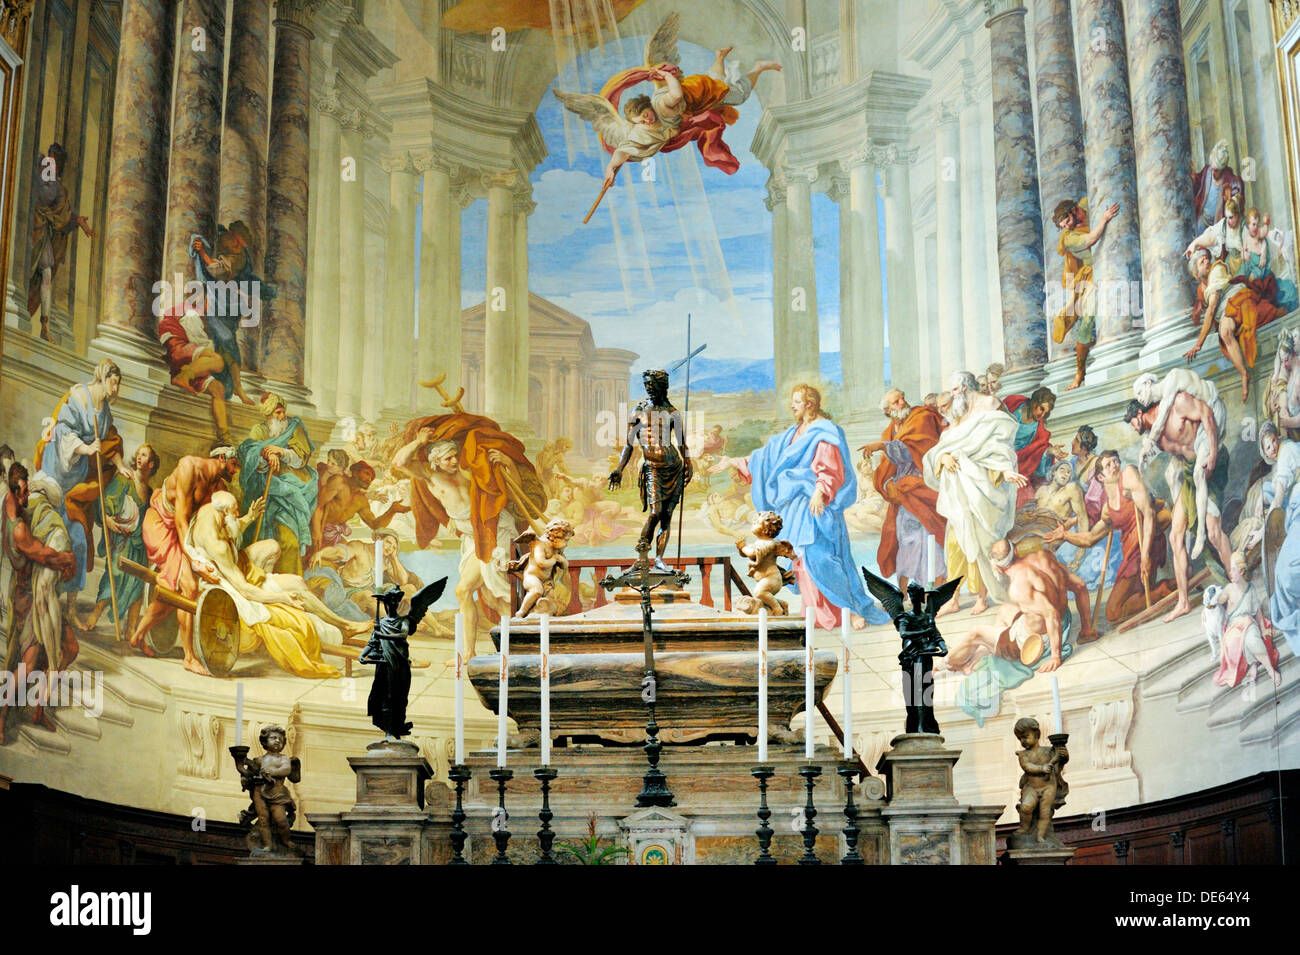 Eglise de la Santissima Annunziata, Sienne, Toscane, Italie. Une partie de l'église Santa Maria della Scala complexe. Autel et fresques de l'abside Banque D'Images